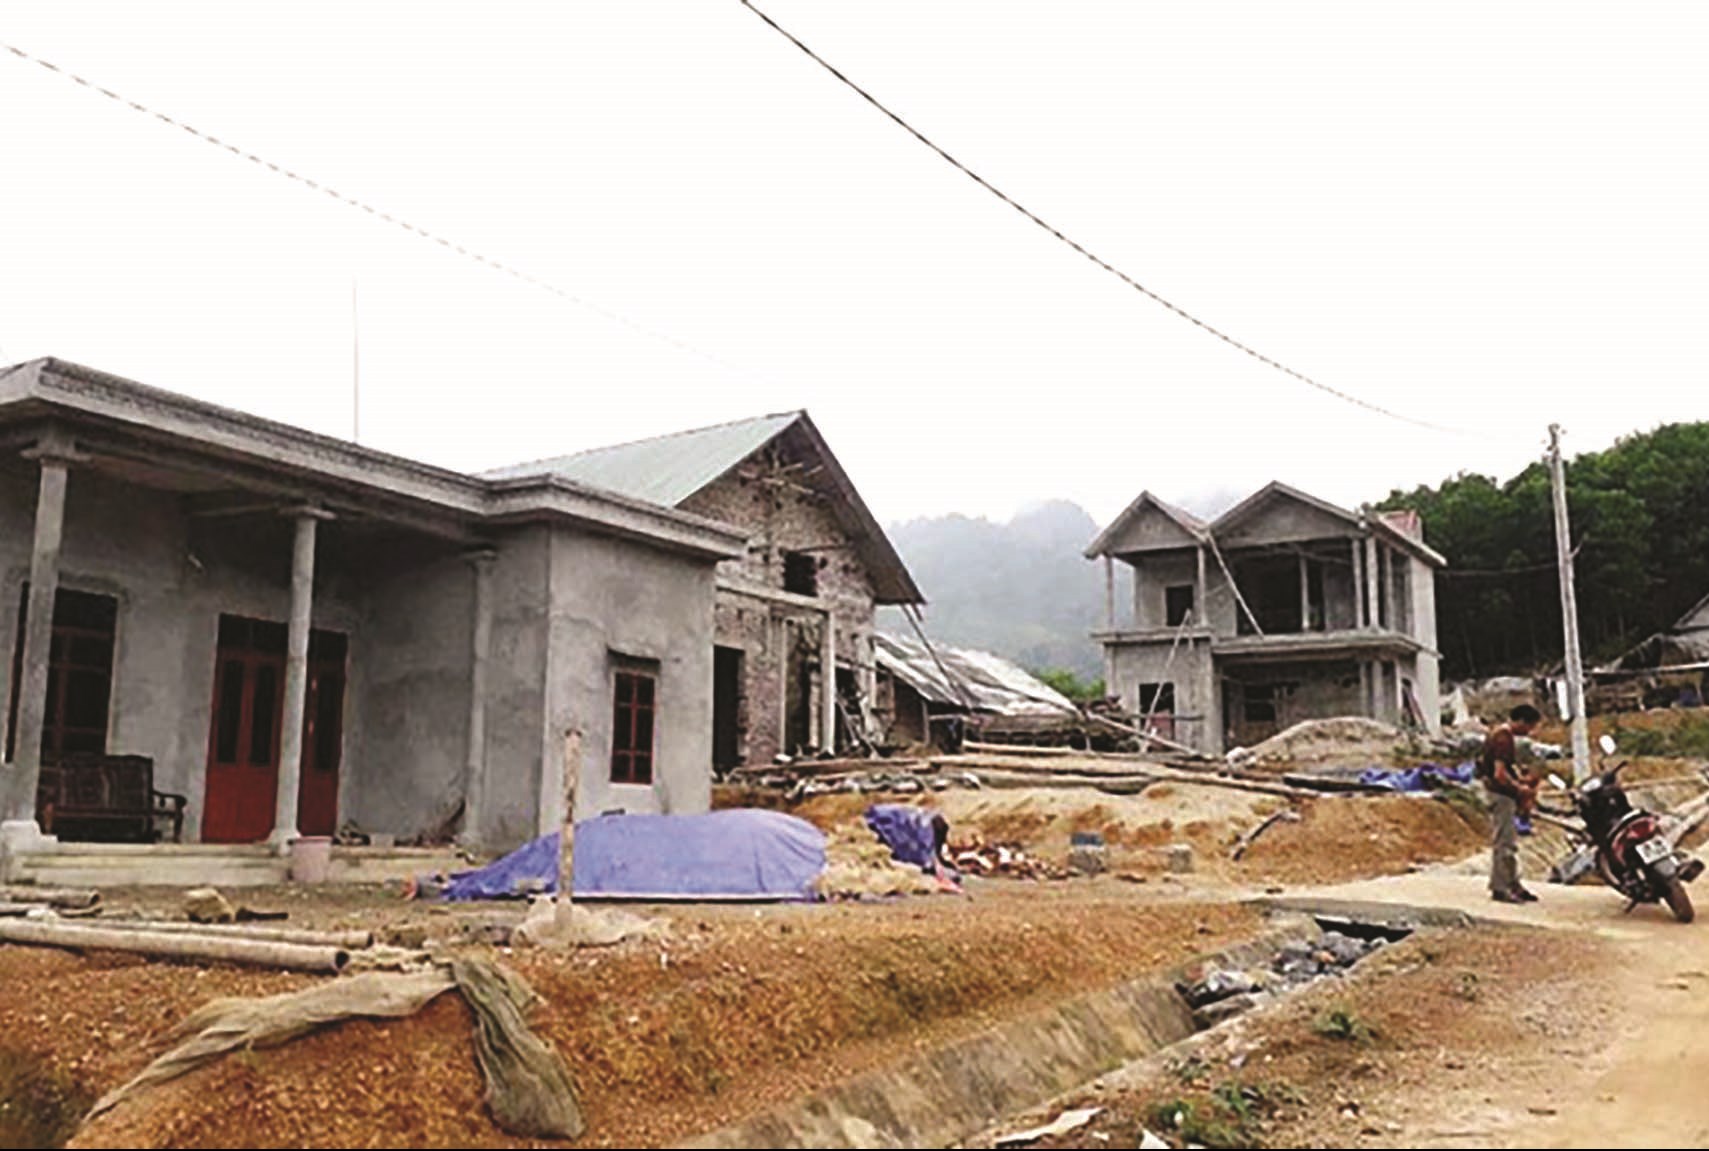 Người dân ở các vùng có nguy cơ sạt lở cao đã được chuyển về khu TĐC xóm Lau Bai, xã Vầy Nưa, huyện Đà Bắc để từng bước ổn định cuộc sống